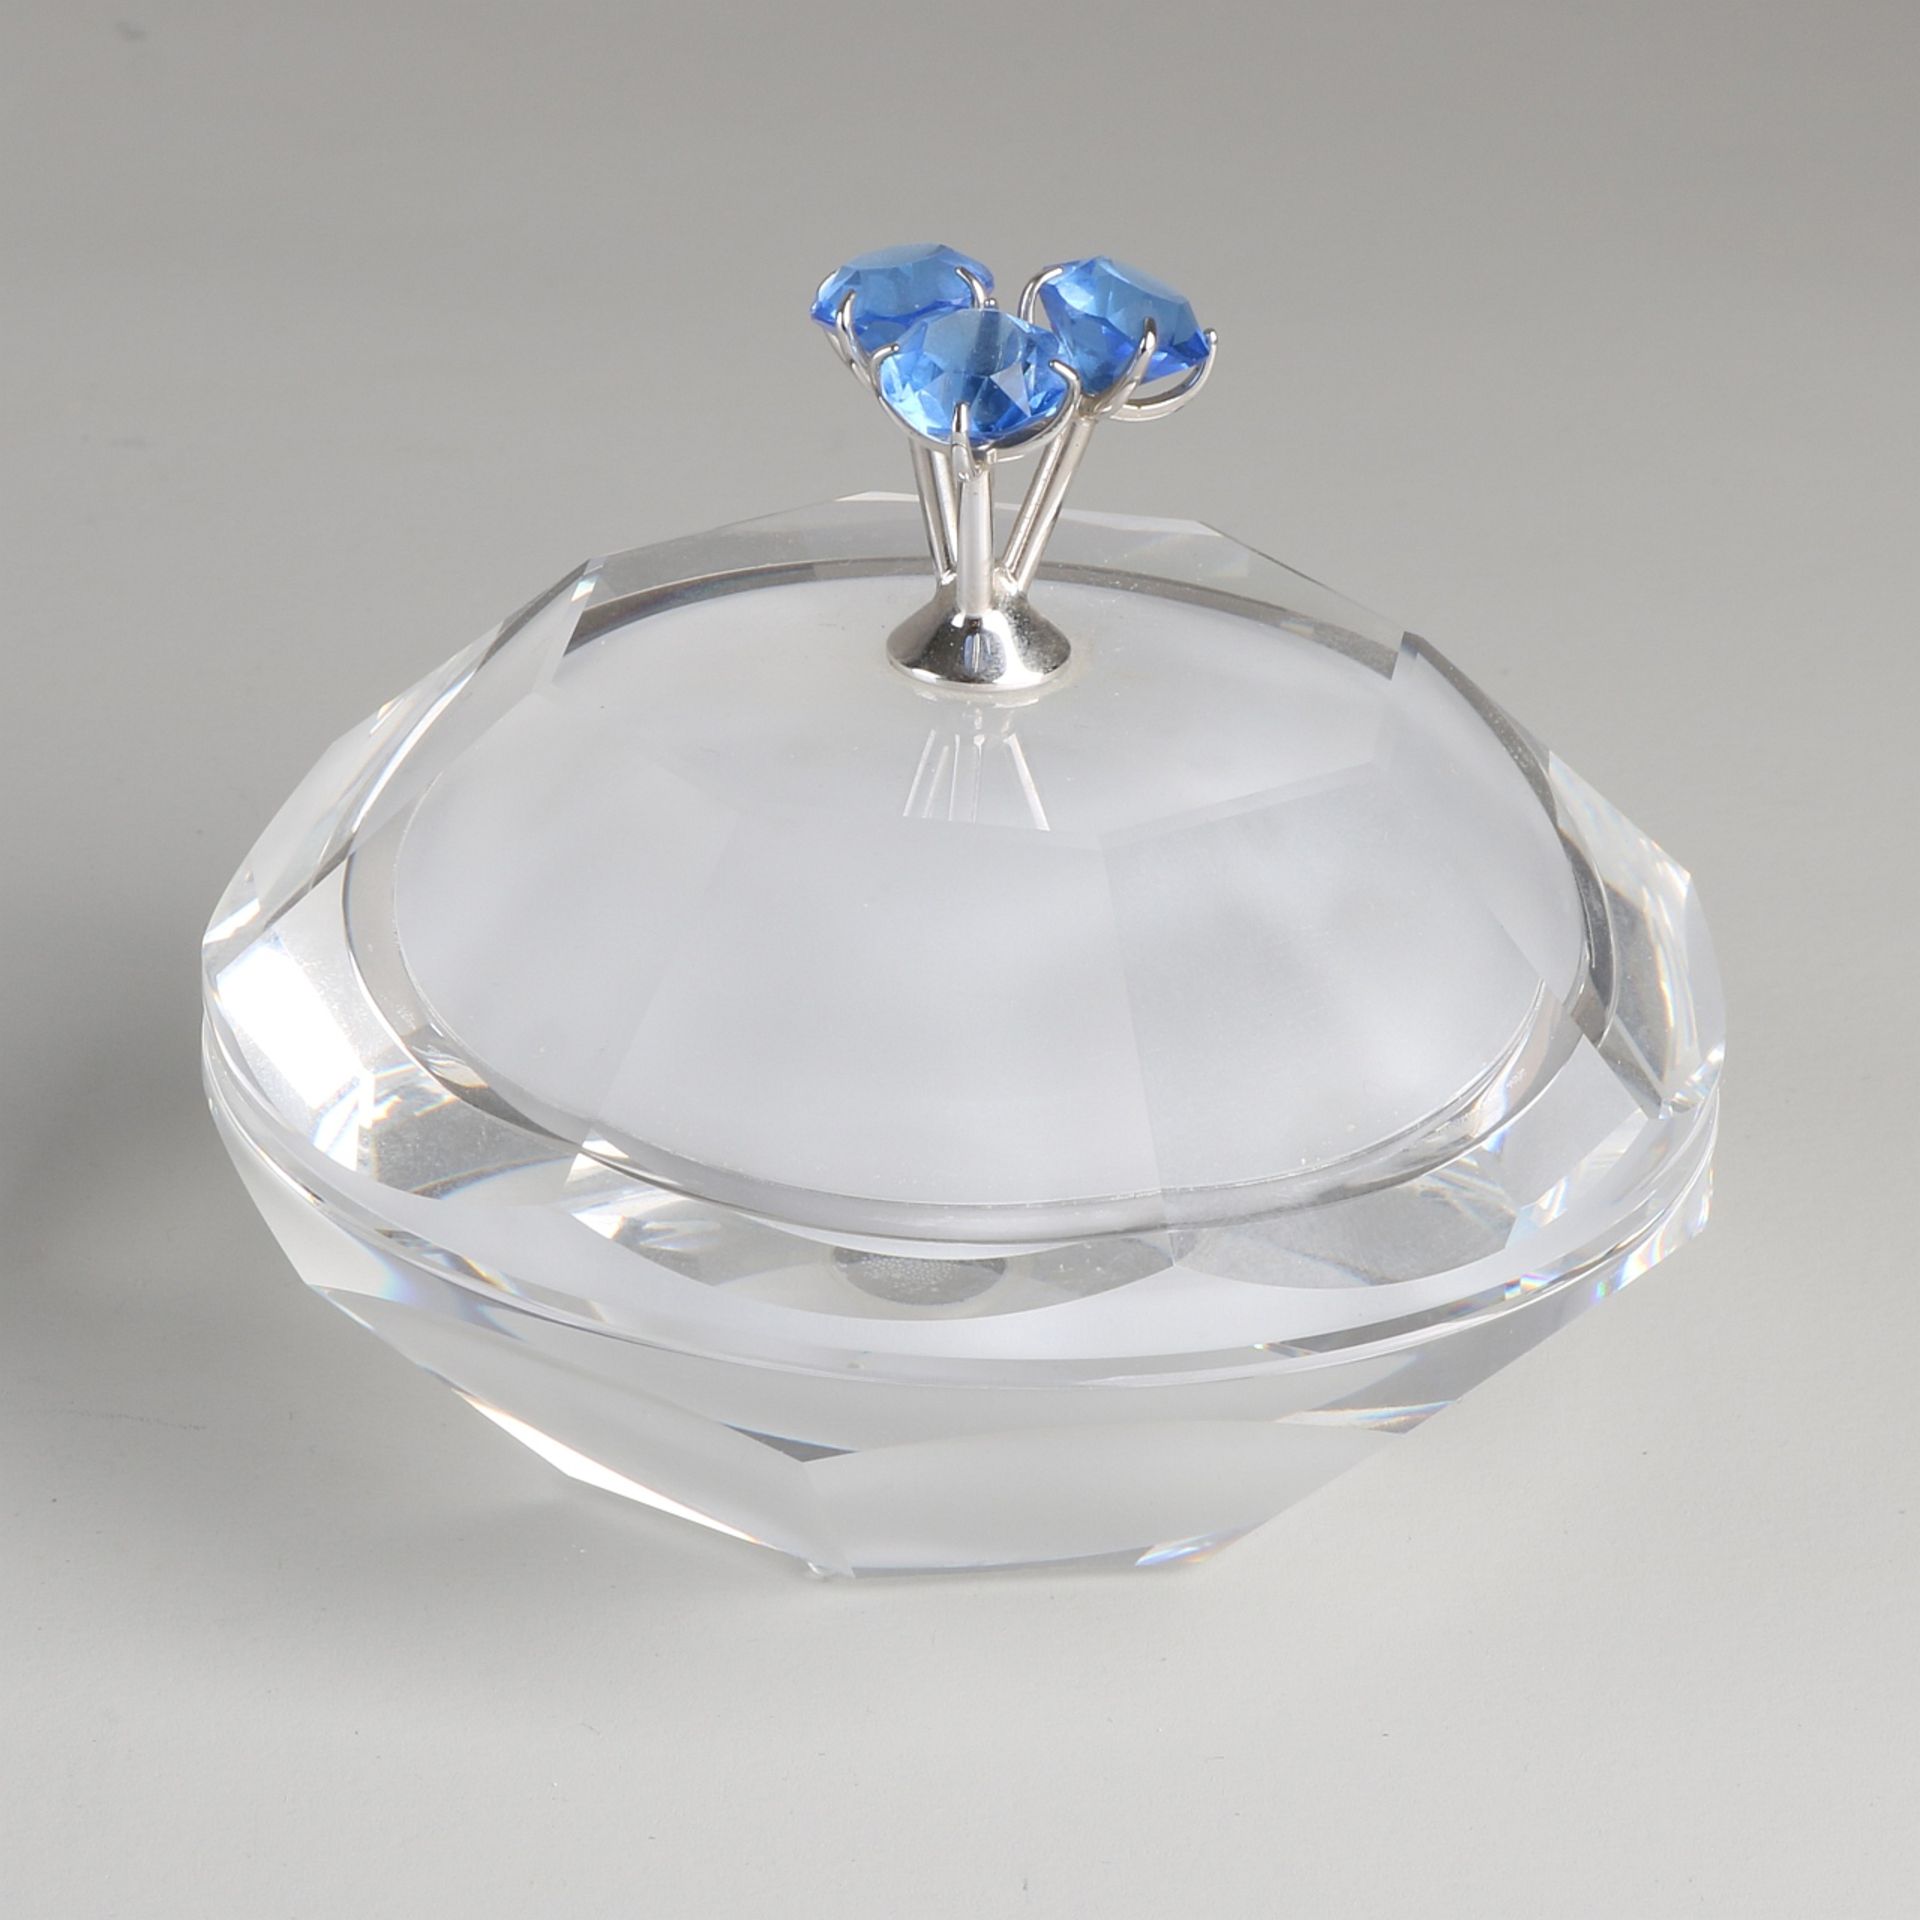 Swarovski Kristall 'Astro' Deckelbox mit drei rautenförmigen blauen Kristallglassteinen auf dem De - Bild 2 aus 2